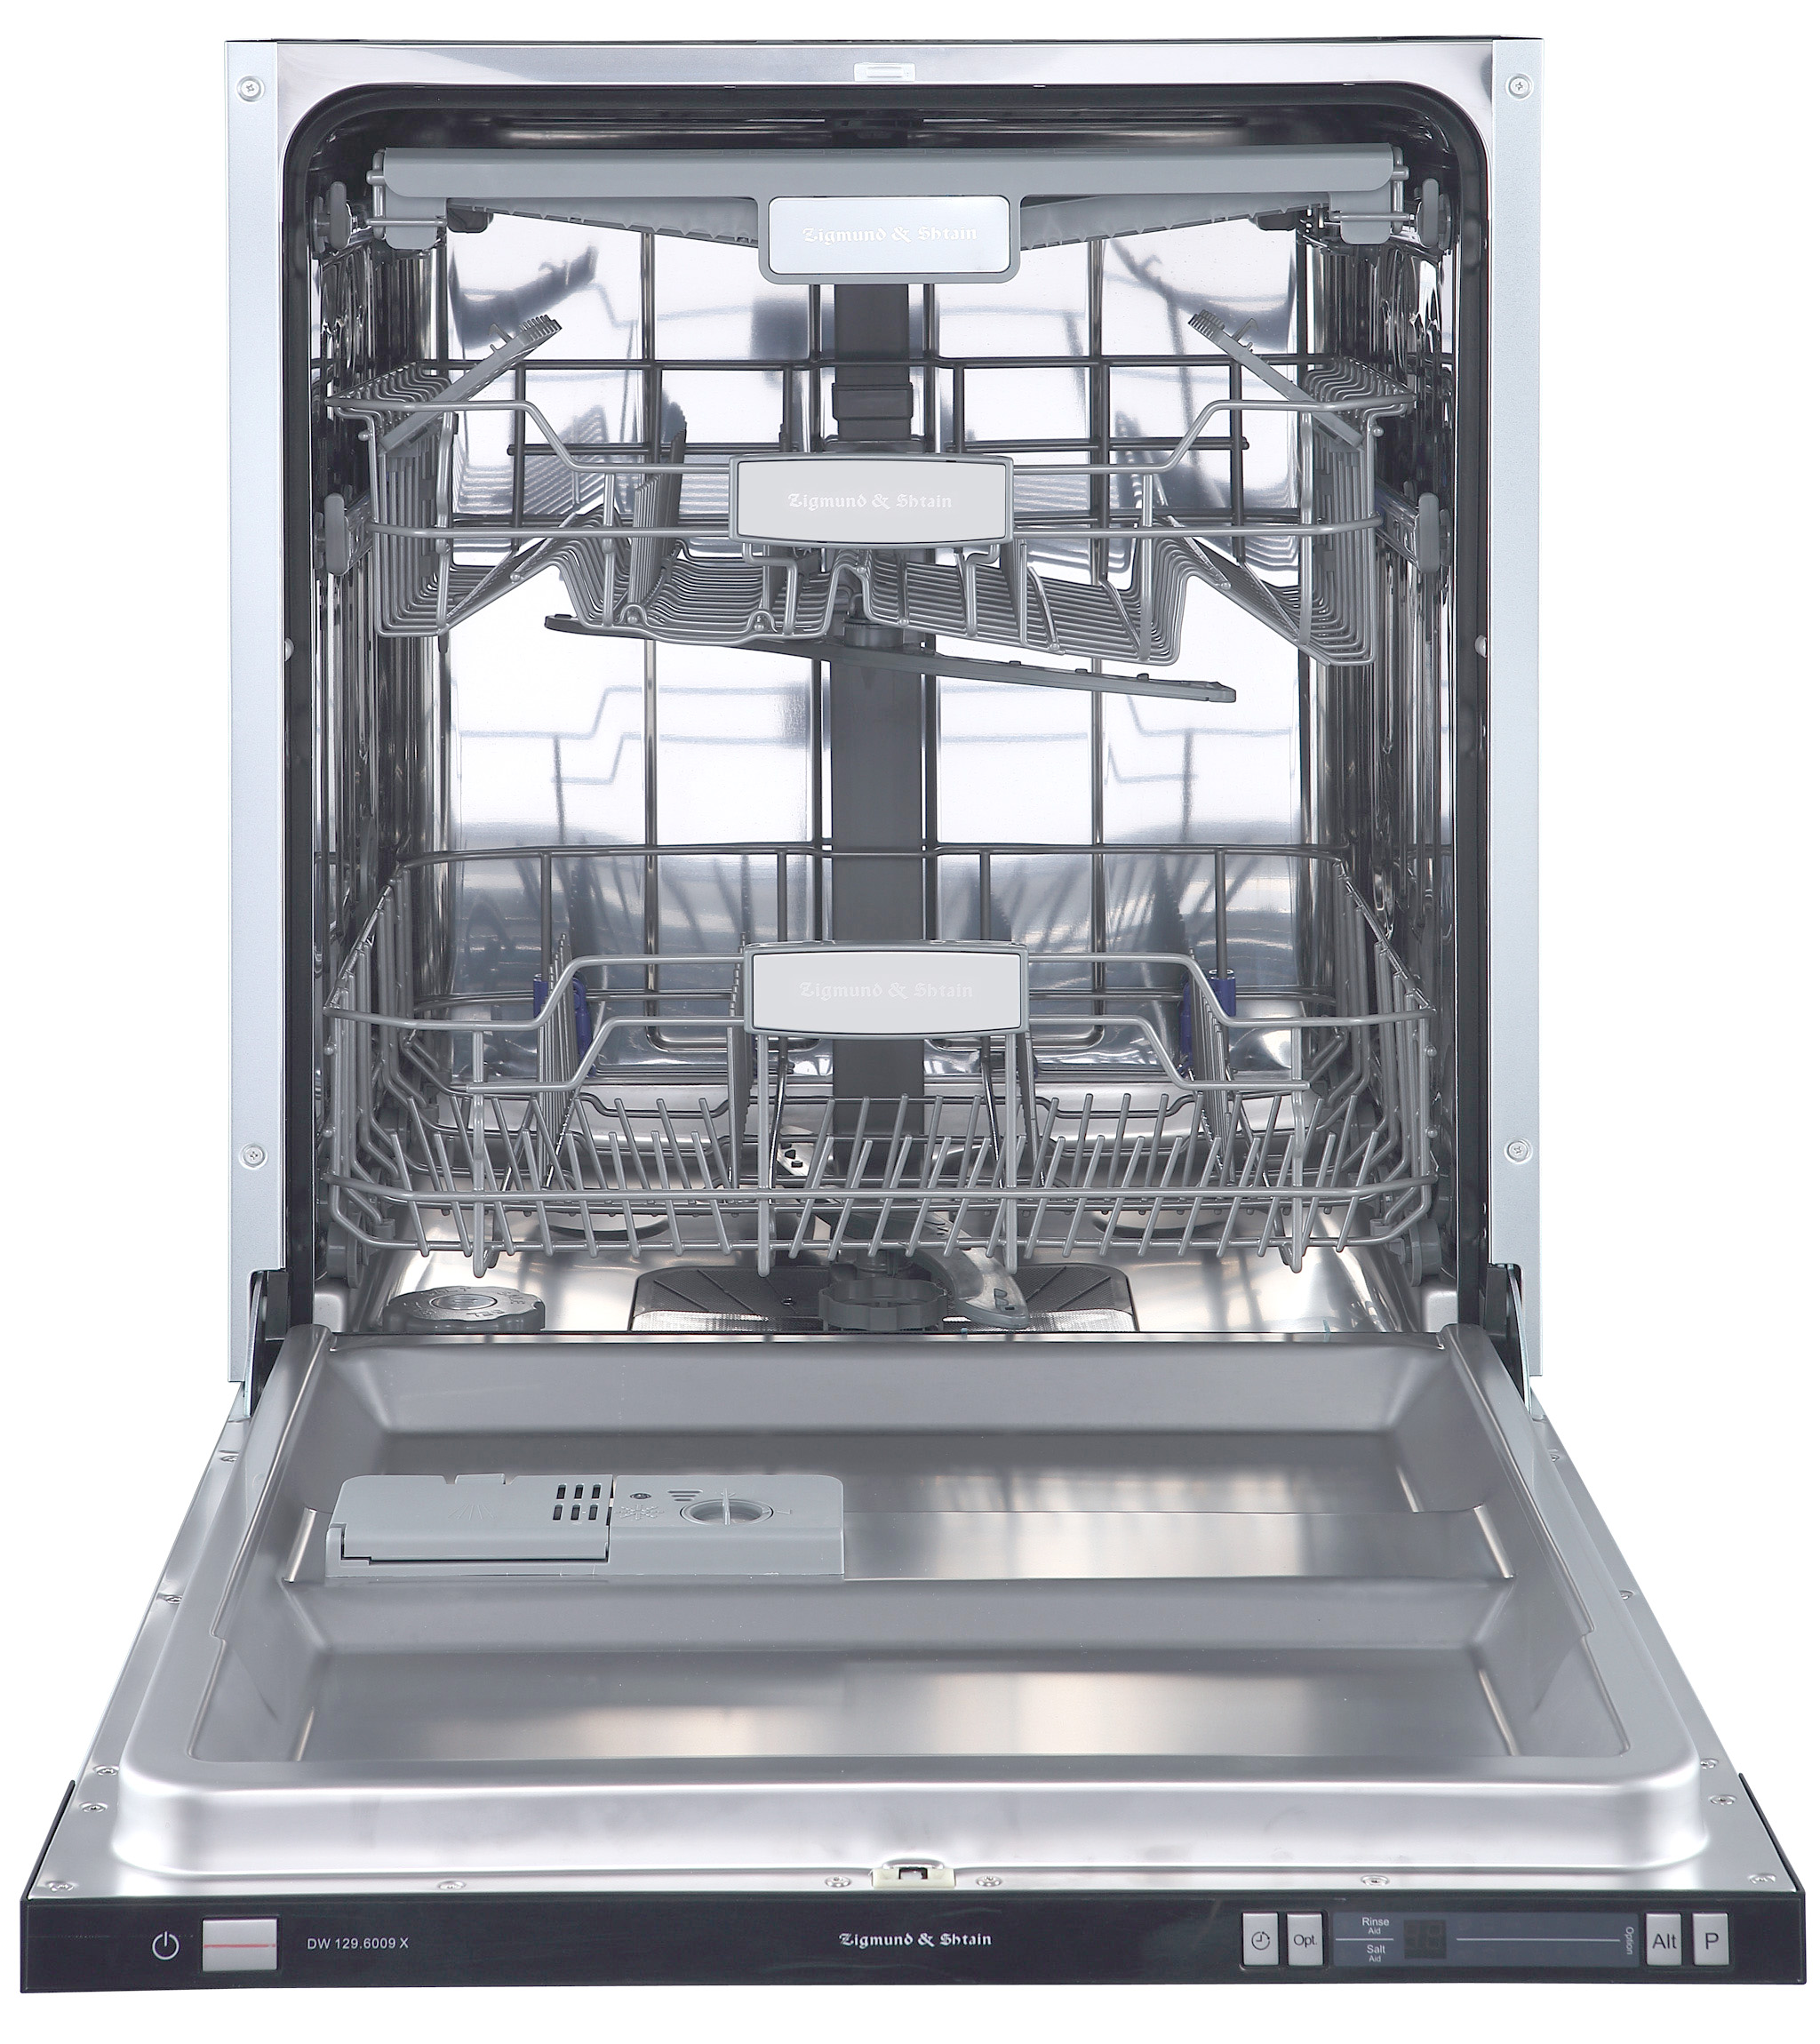 Встраиваемая посудомоечная машина Zigmund & Shtain DW 129.6009 X встраиваемая посудомоечная машина simfer dgb4701 aqua stop луч на полу верхняя полка складывается энергоэффективность a вместимость 10 комплектов